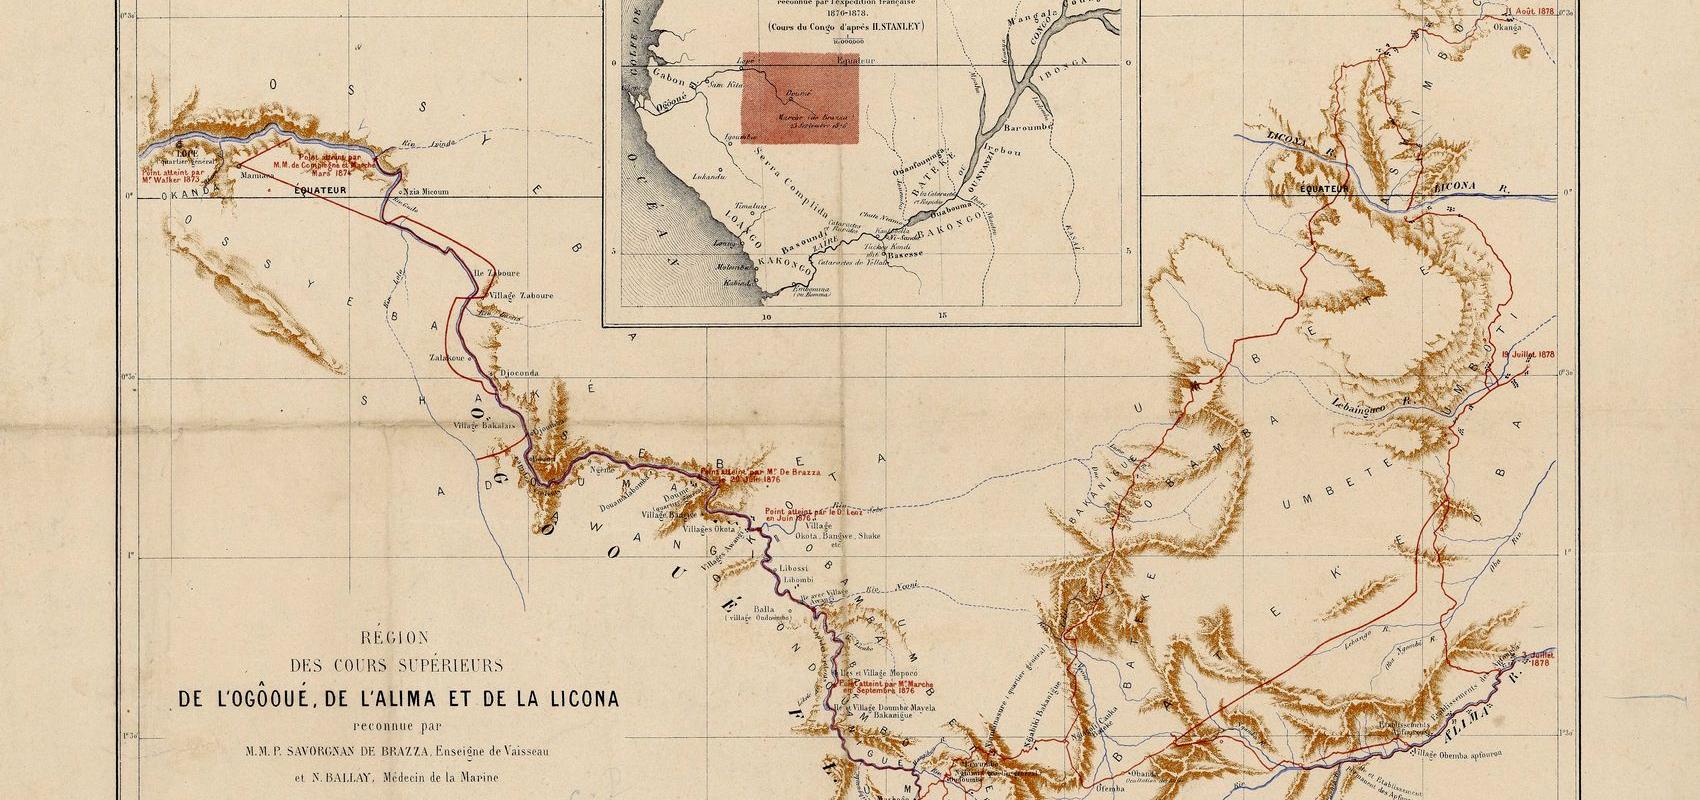 Région des cours supérieurs de l'Ogôoué, de l'Alima et de la Licona reconnue par M.M.P. Savorgnan de Brazza et N. Ballay - 1879 - BnF, département des Cartes et plans